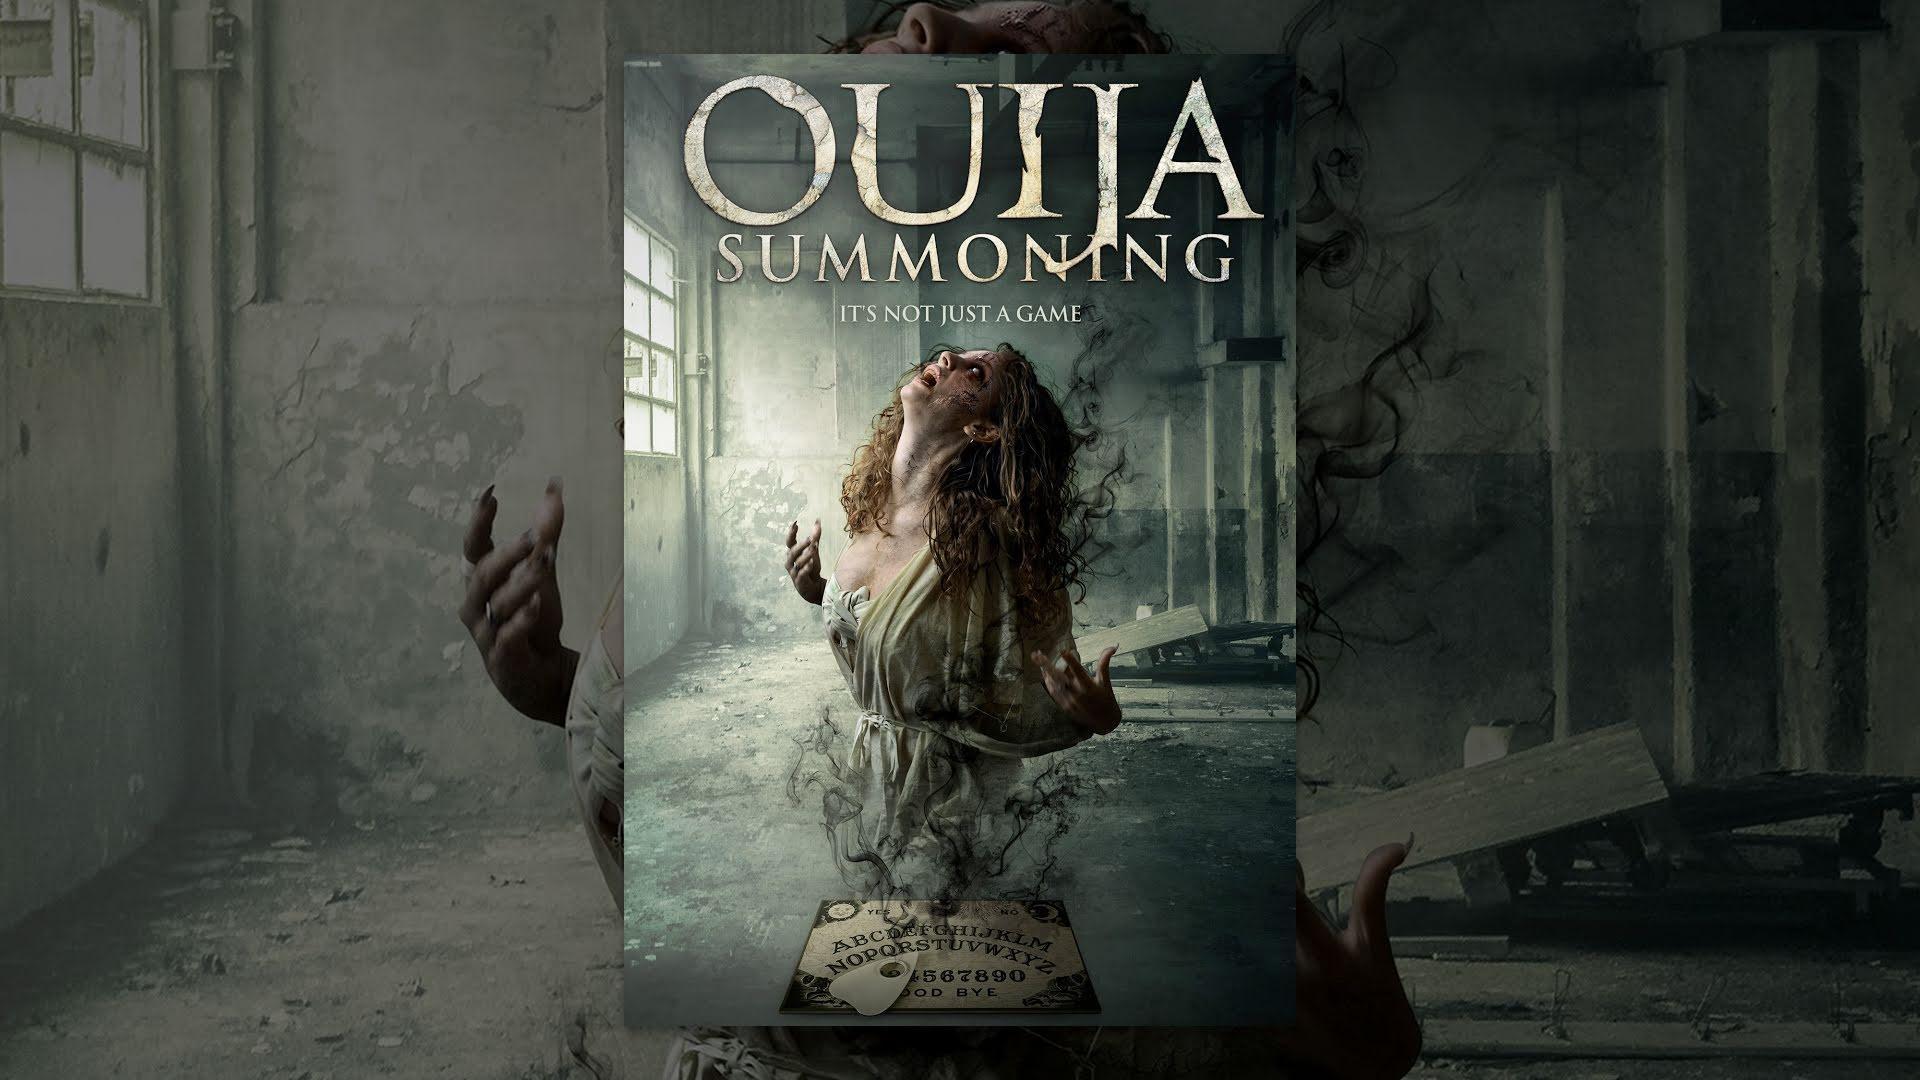 مشاهدة فيلم Ouija Summoning 2015 مترجم HD اون لاين